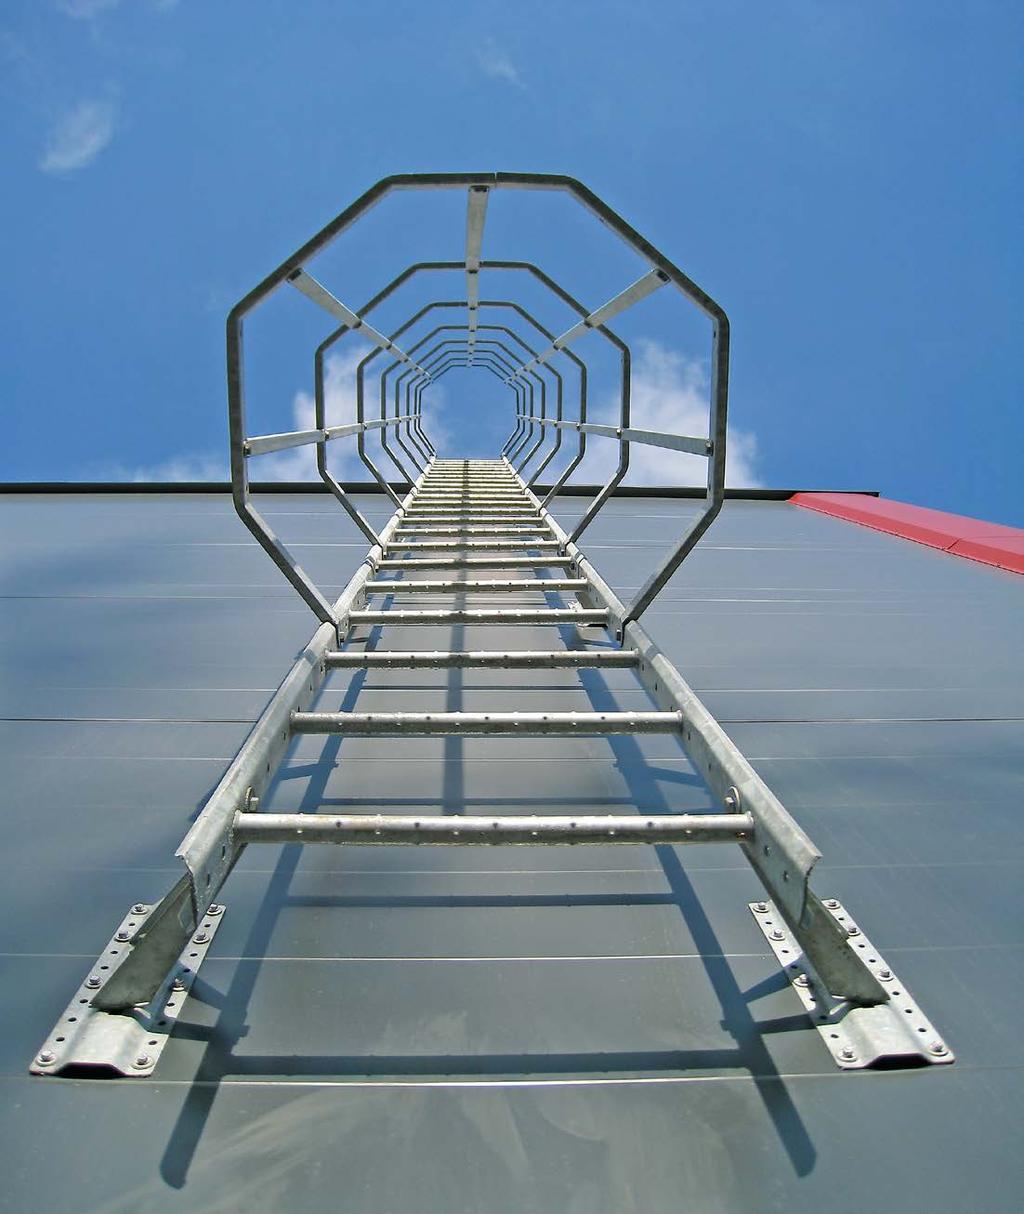 Fasadestiger Weland lager ulike typer fasadestiger. Brukes først og fremst for å få tilgang til tak, tårn, siloer m.m. Fasadestigen lages også for rømning.